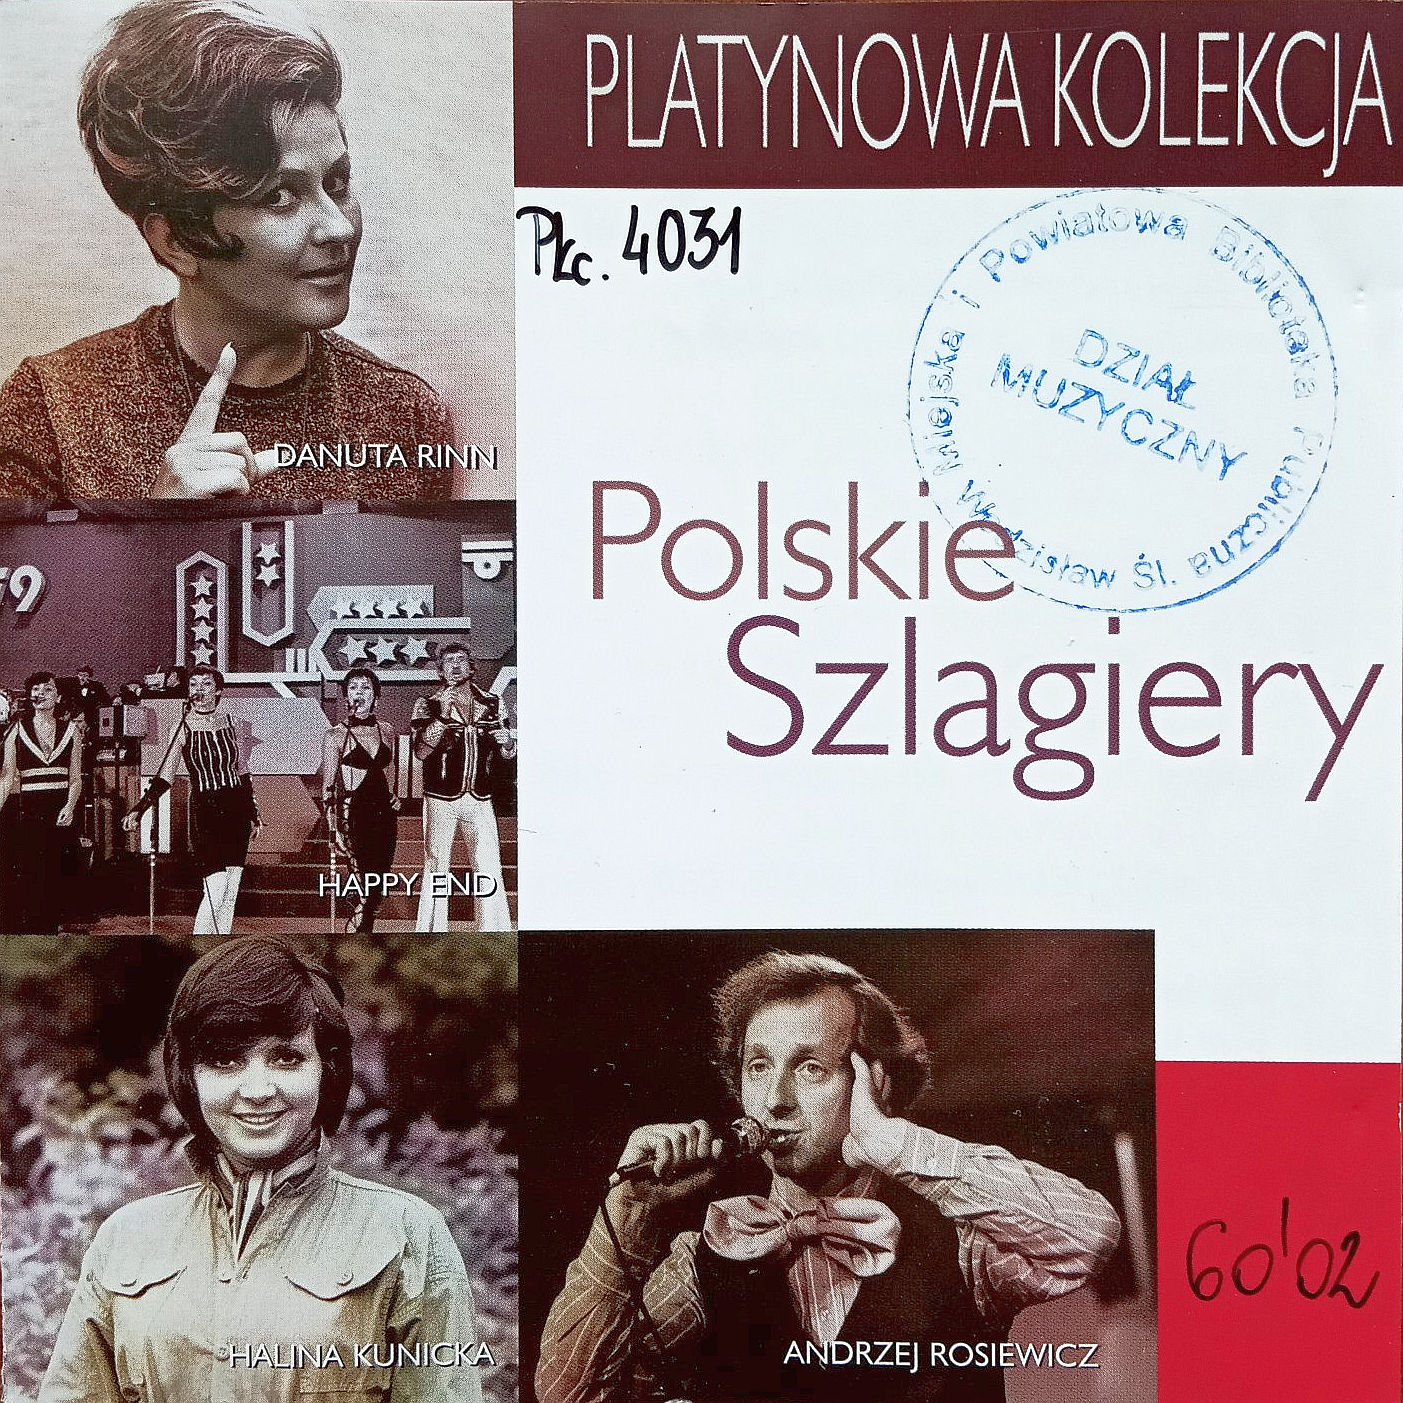 Polskie Szlagiery – Platynowa Kolekcja